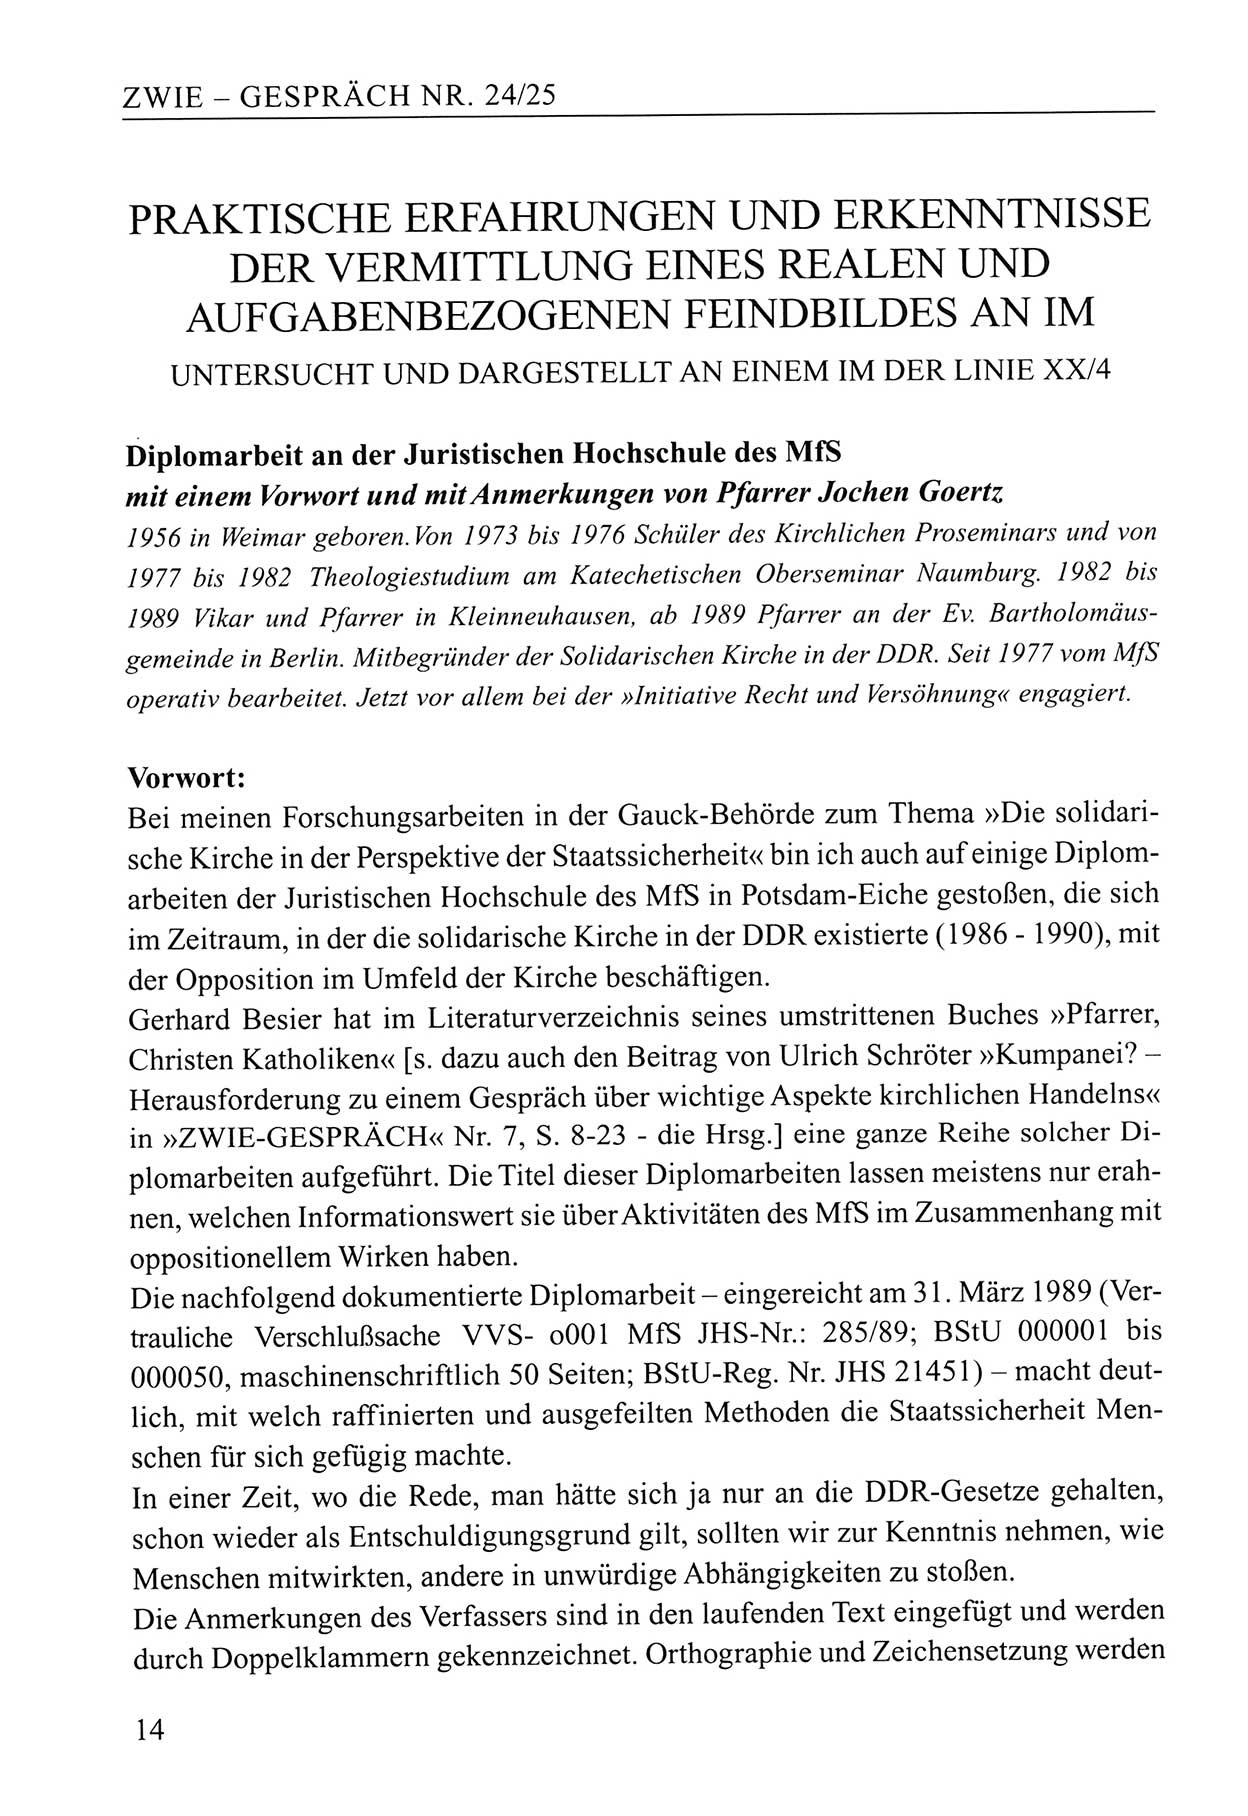 Zwie-Gespräch, Beiträge zum Umgang mit der Staatssicherheits-Vergangenheit [Deutsche Demokratische Republik (DDR)], Ausgabe Nr. 24/25, Berlin 1994, Seite 14 (Zwie-Gespr. Ausg. 24/25 1994, S. 14)